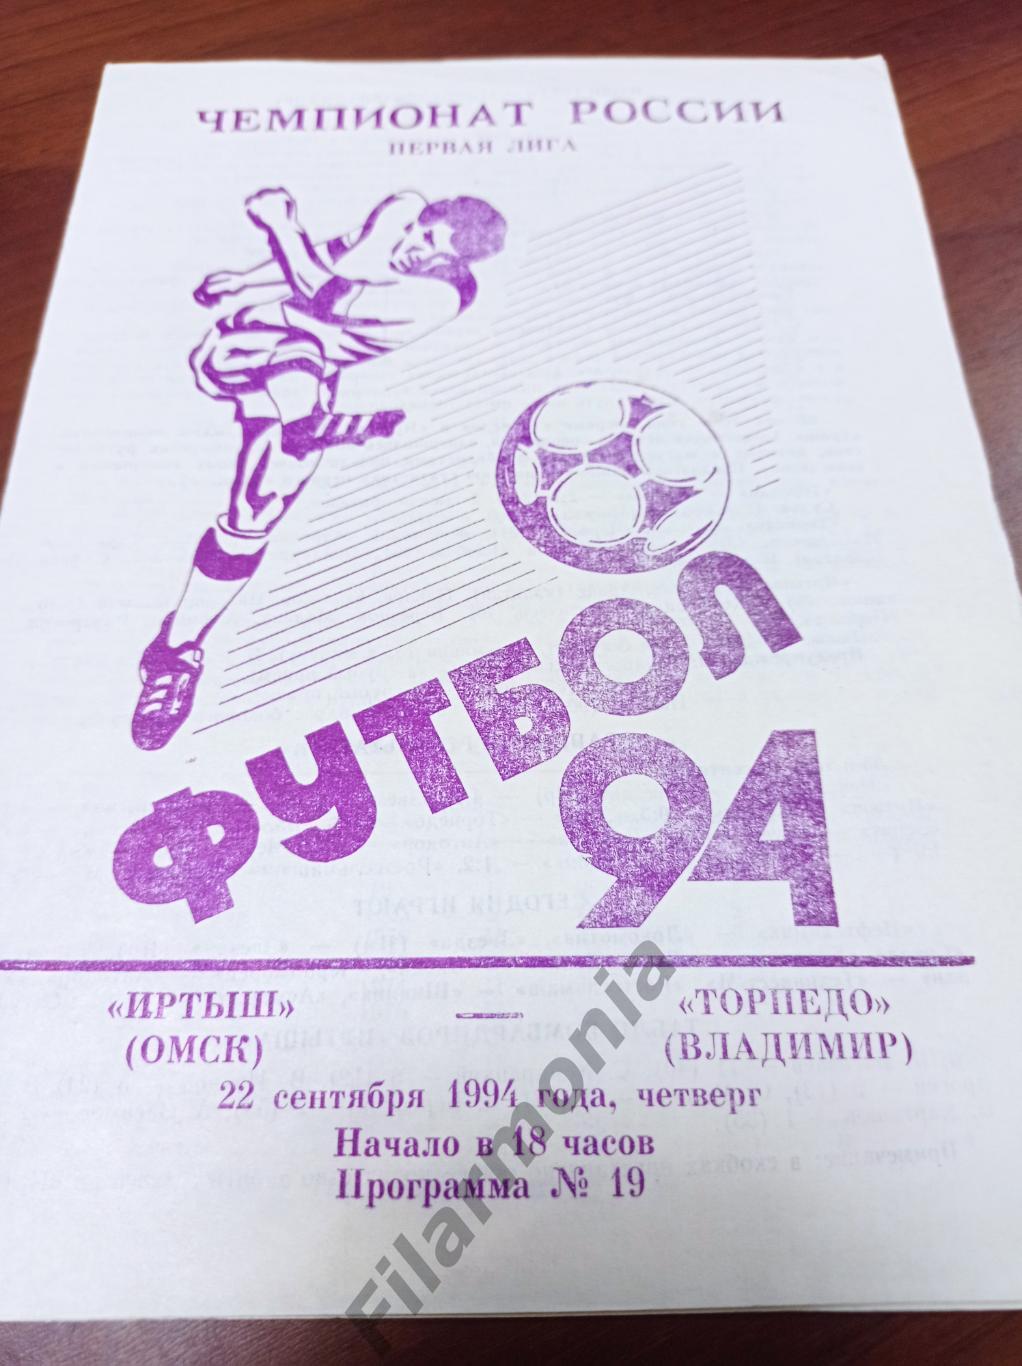 1994 Иртыш Омск - Торпедо Владимир